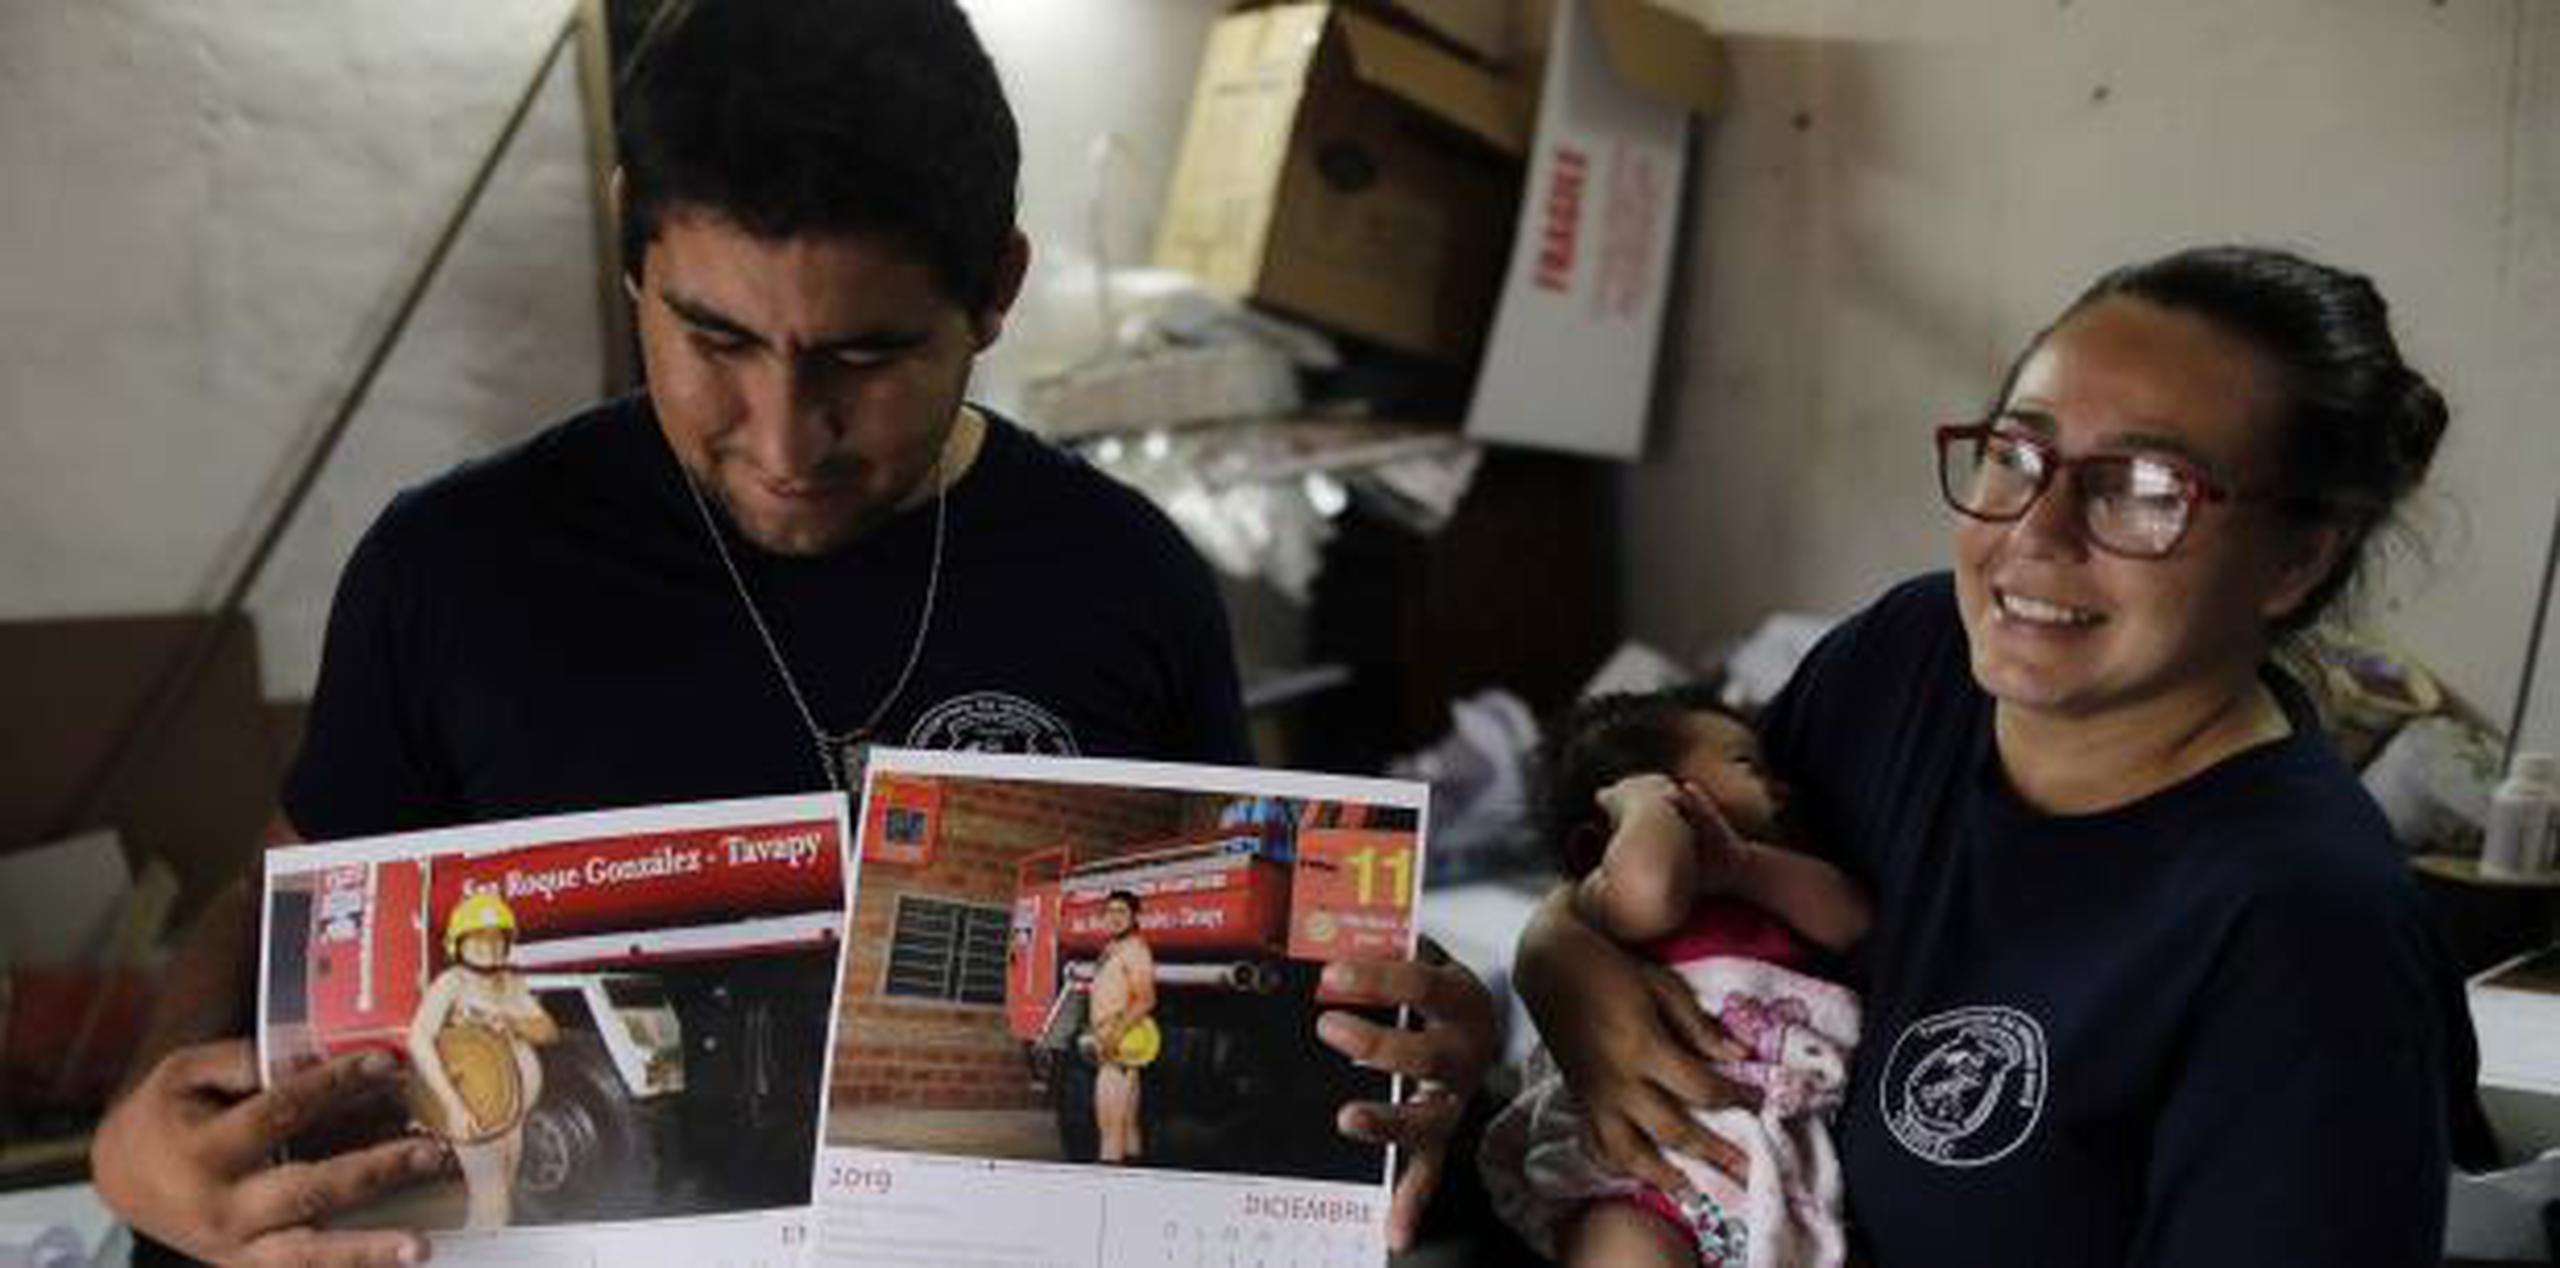 La bombera Fátima Olmedo sostiene a su hija de dos meses Samara mientras su esposo, Rodrigo Giménez, muestra las páginas del calendario donde salen desnudos, en Asunción, Paraguay. (AP / Jorge Saenz)